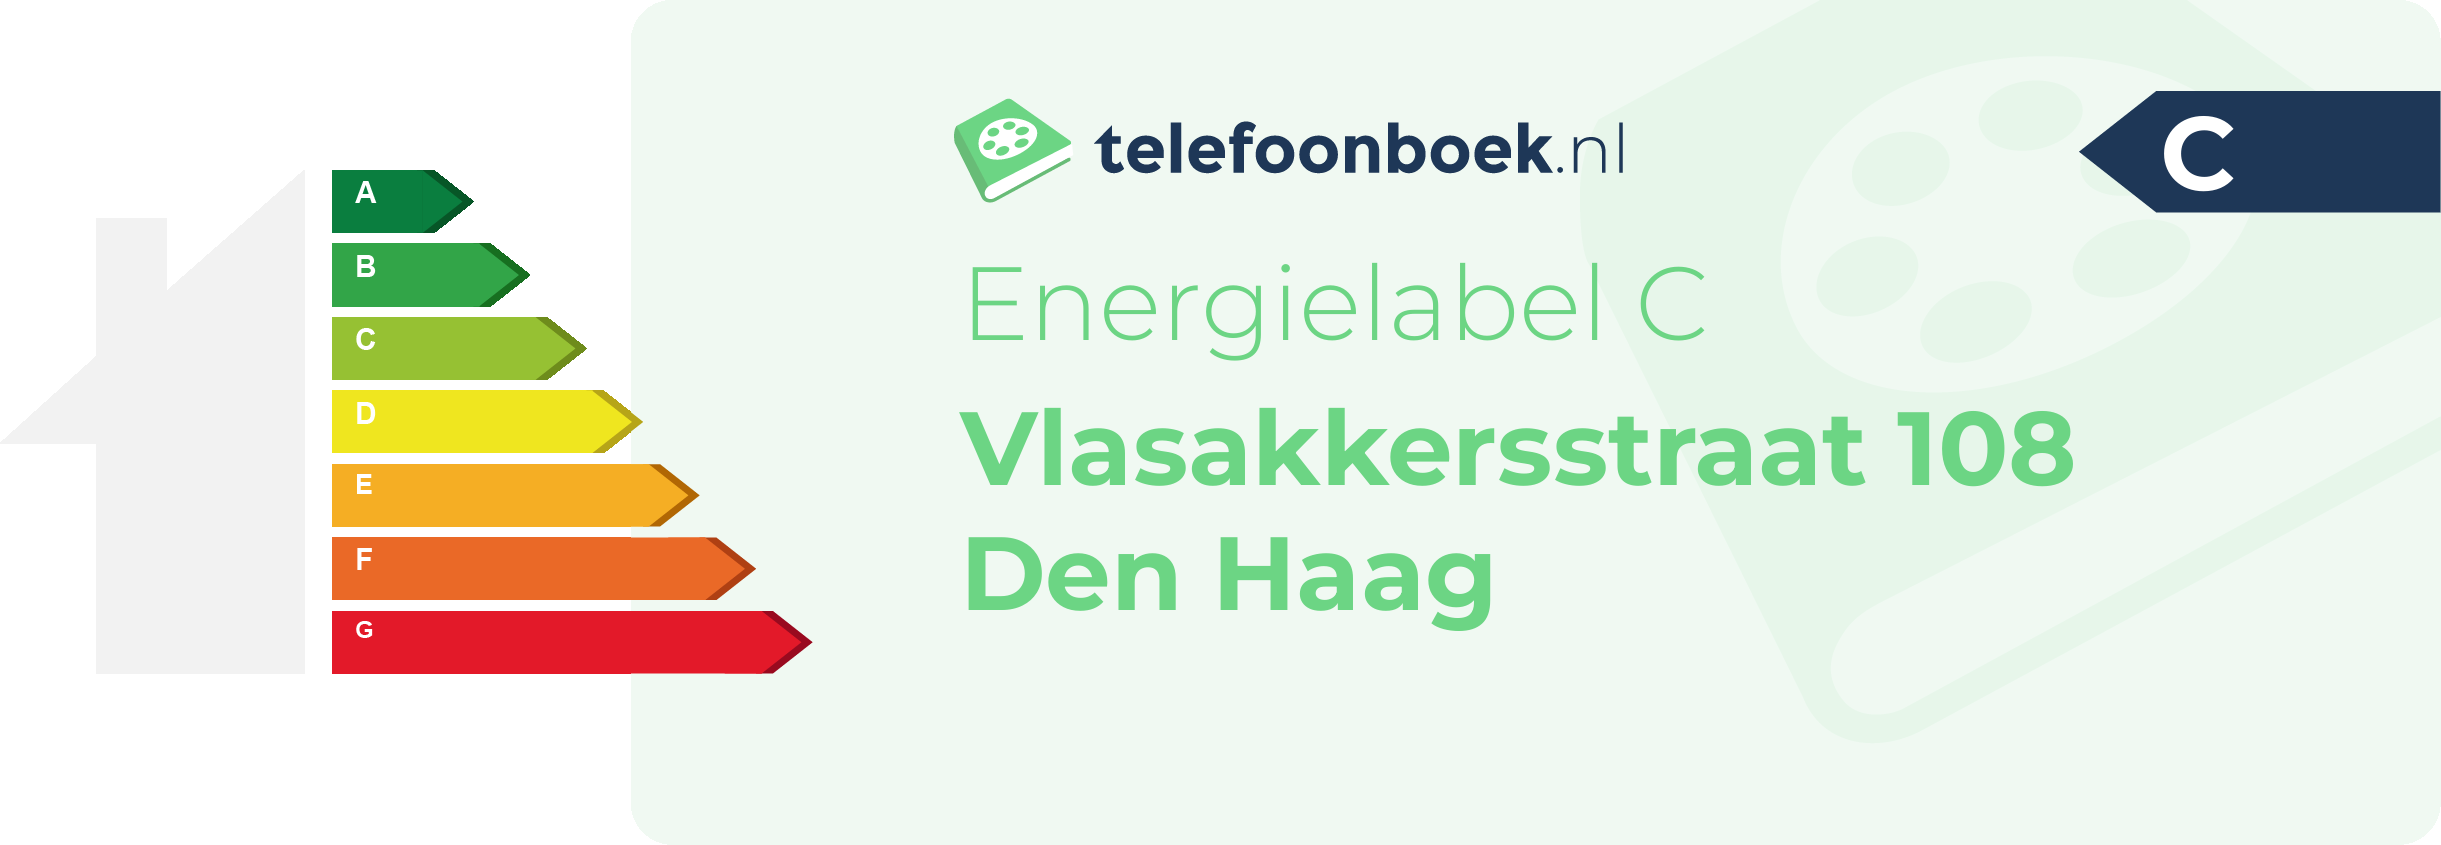 Energielabel Vlasakkersstraat 108 Den Haag